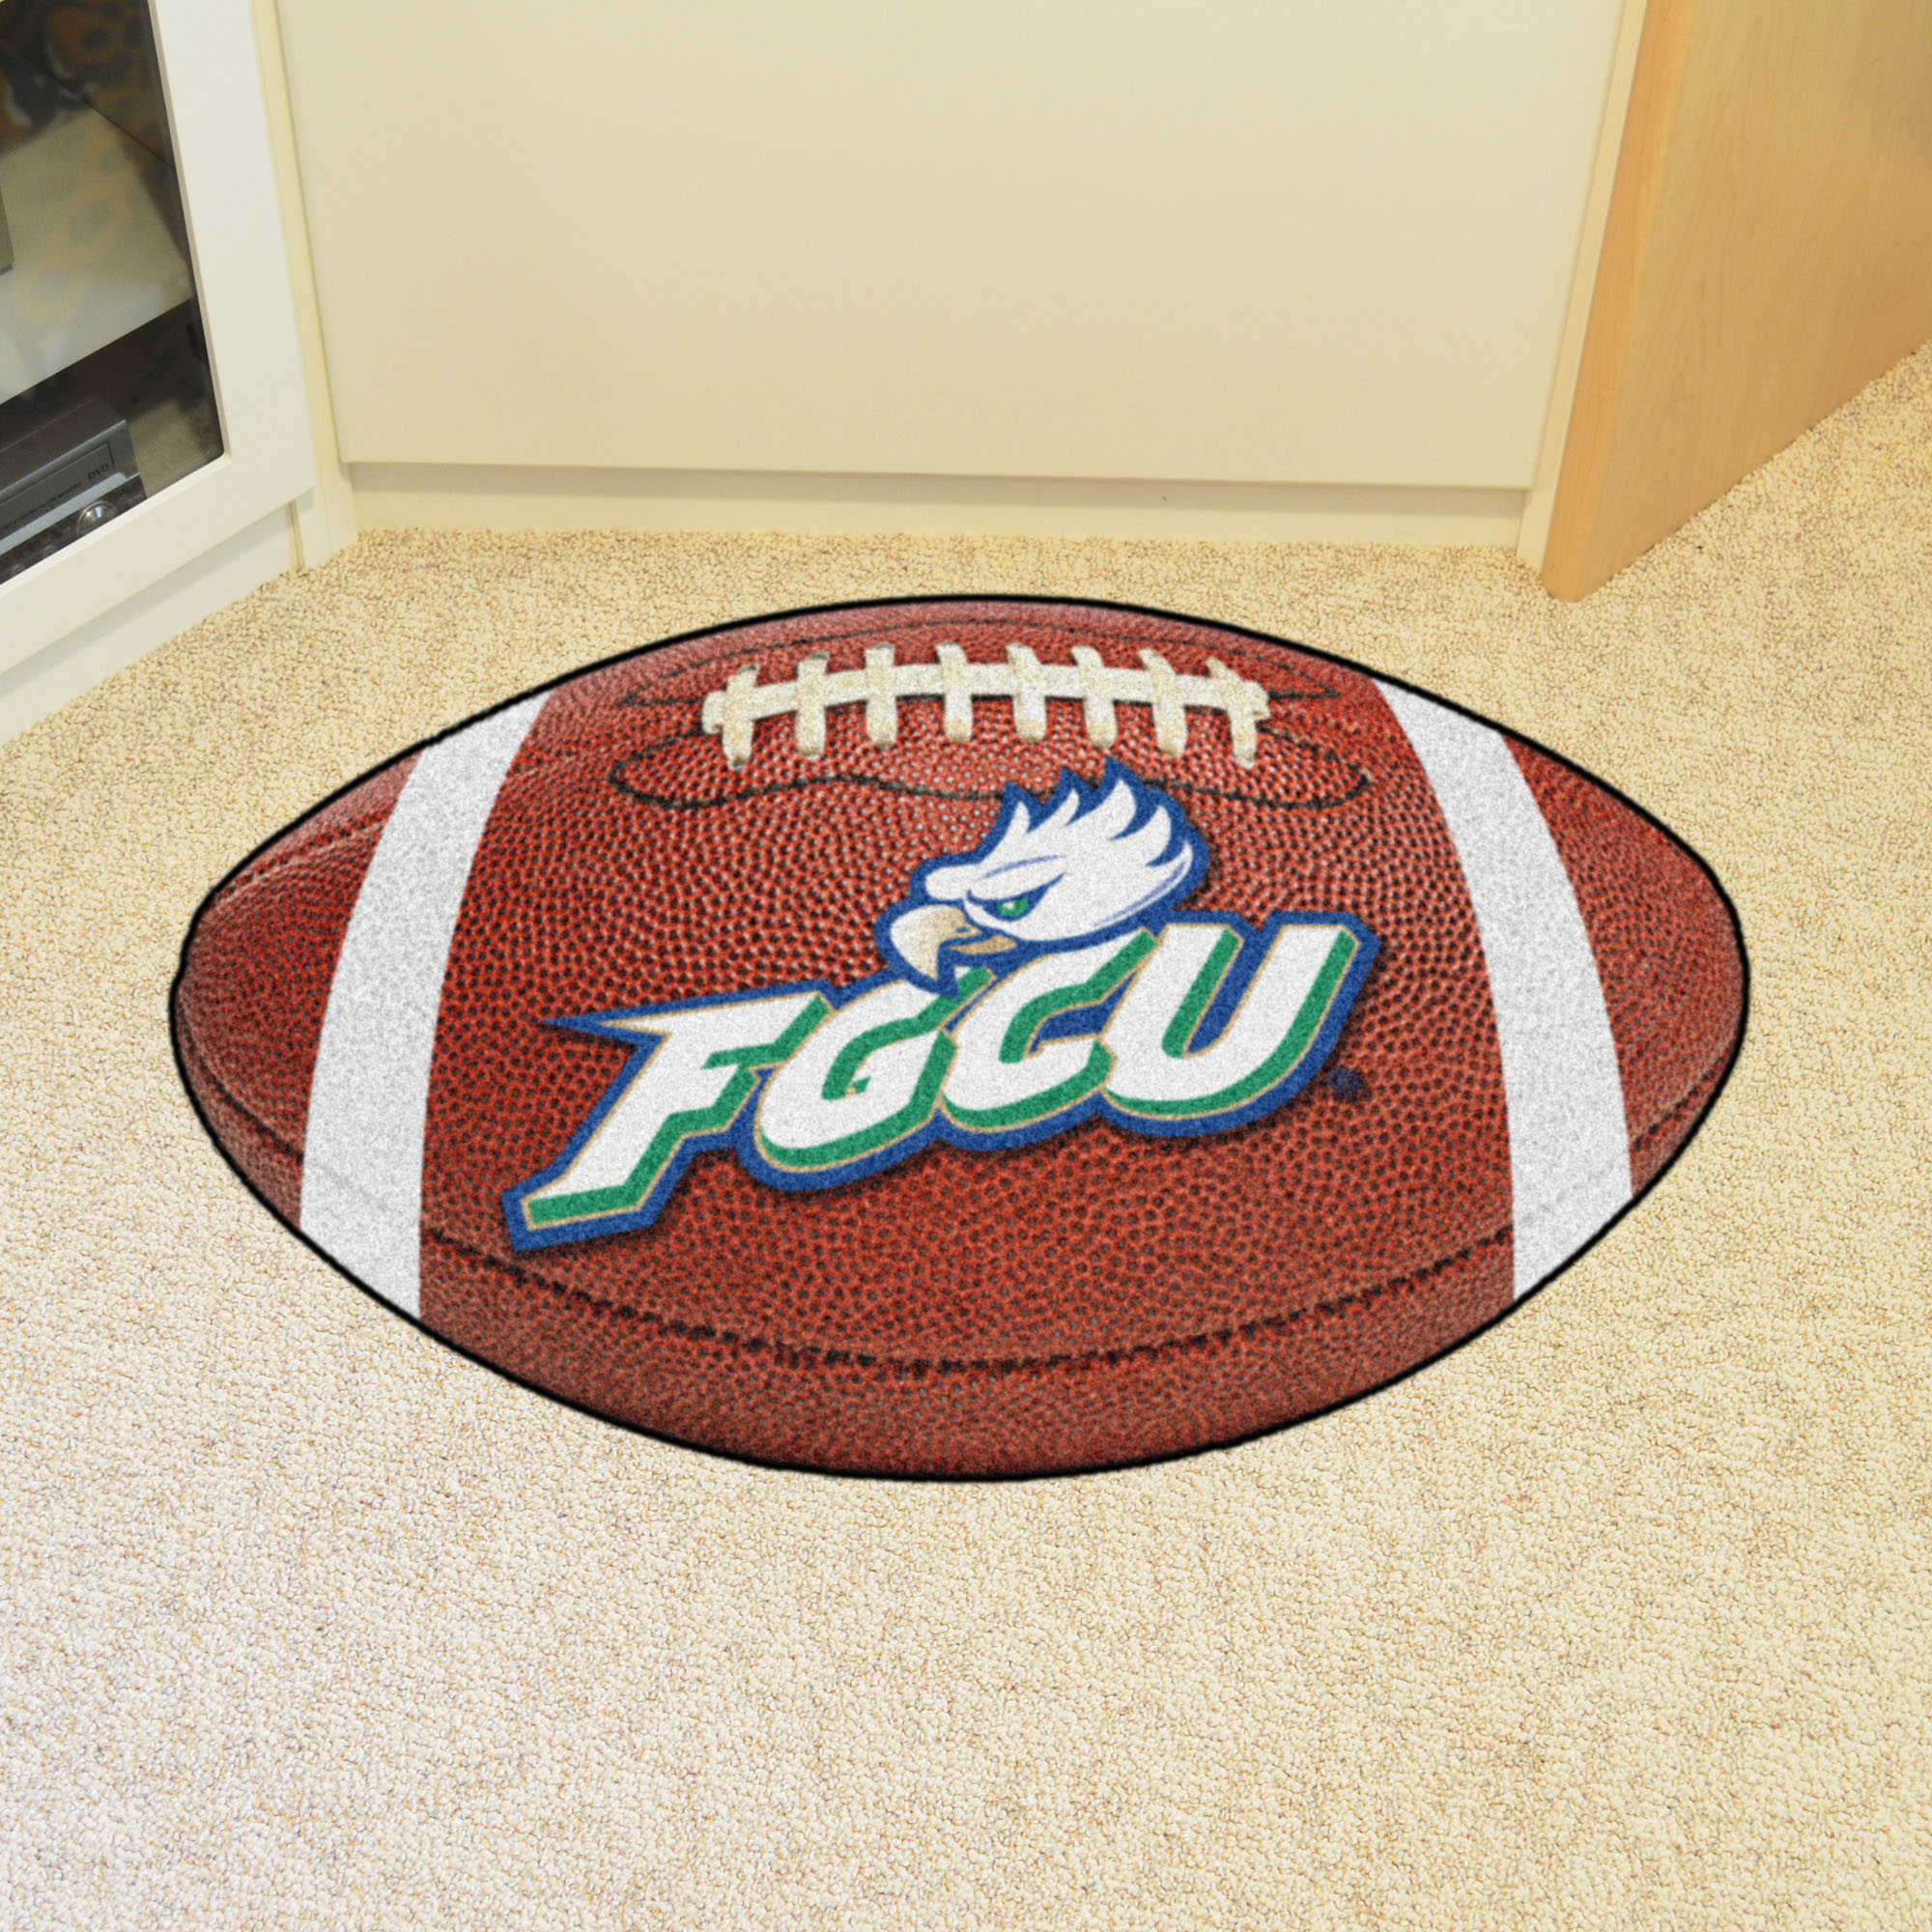 Florida Gulf Coast University Ball Shaped Area Rugs (Ball Shaped Area Rugs: Football)